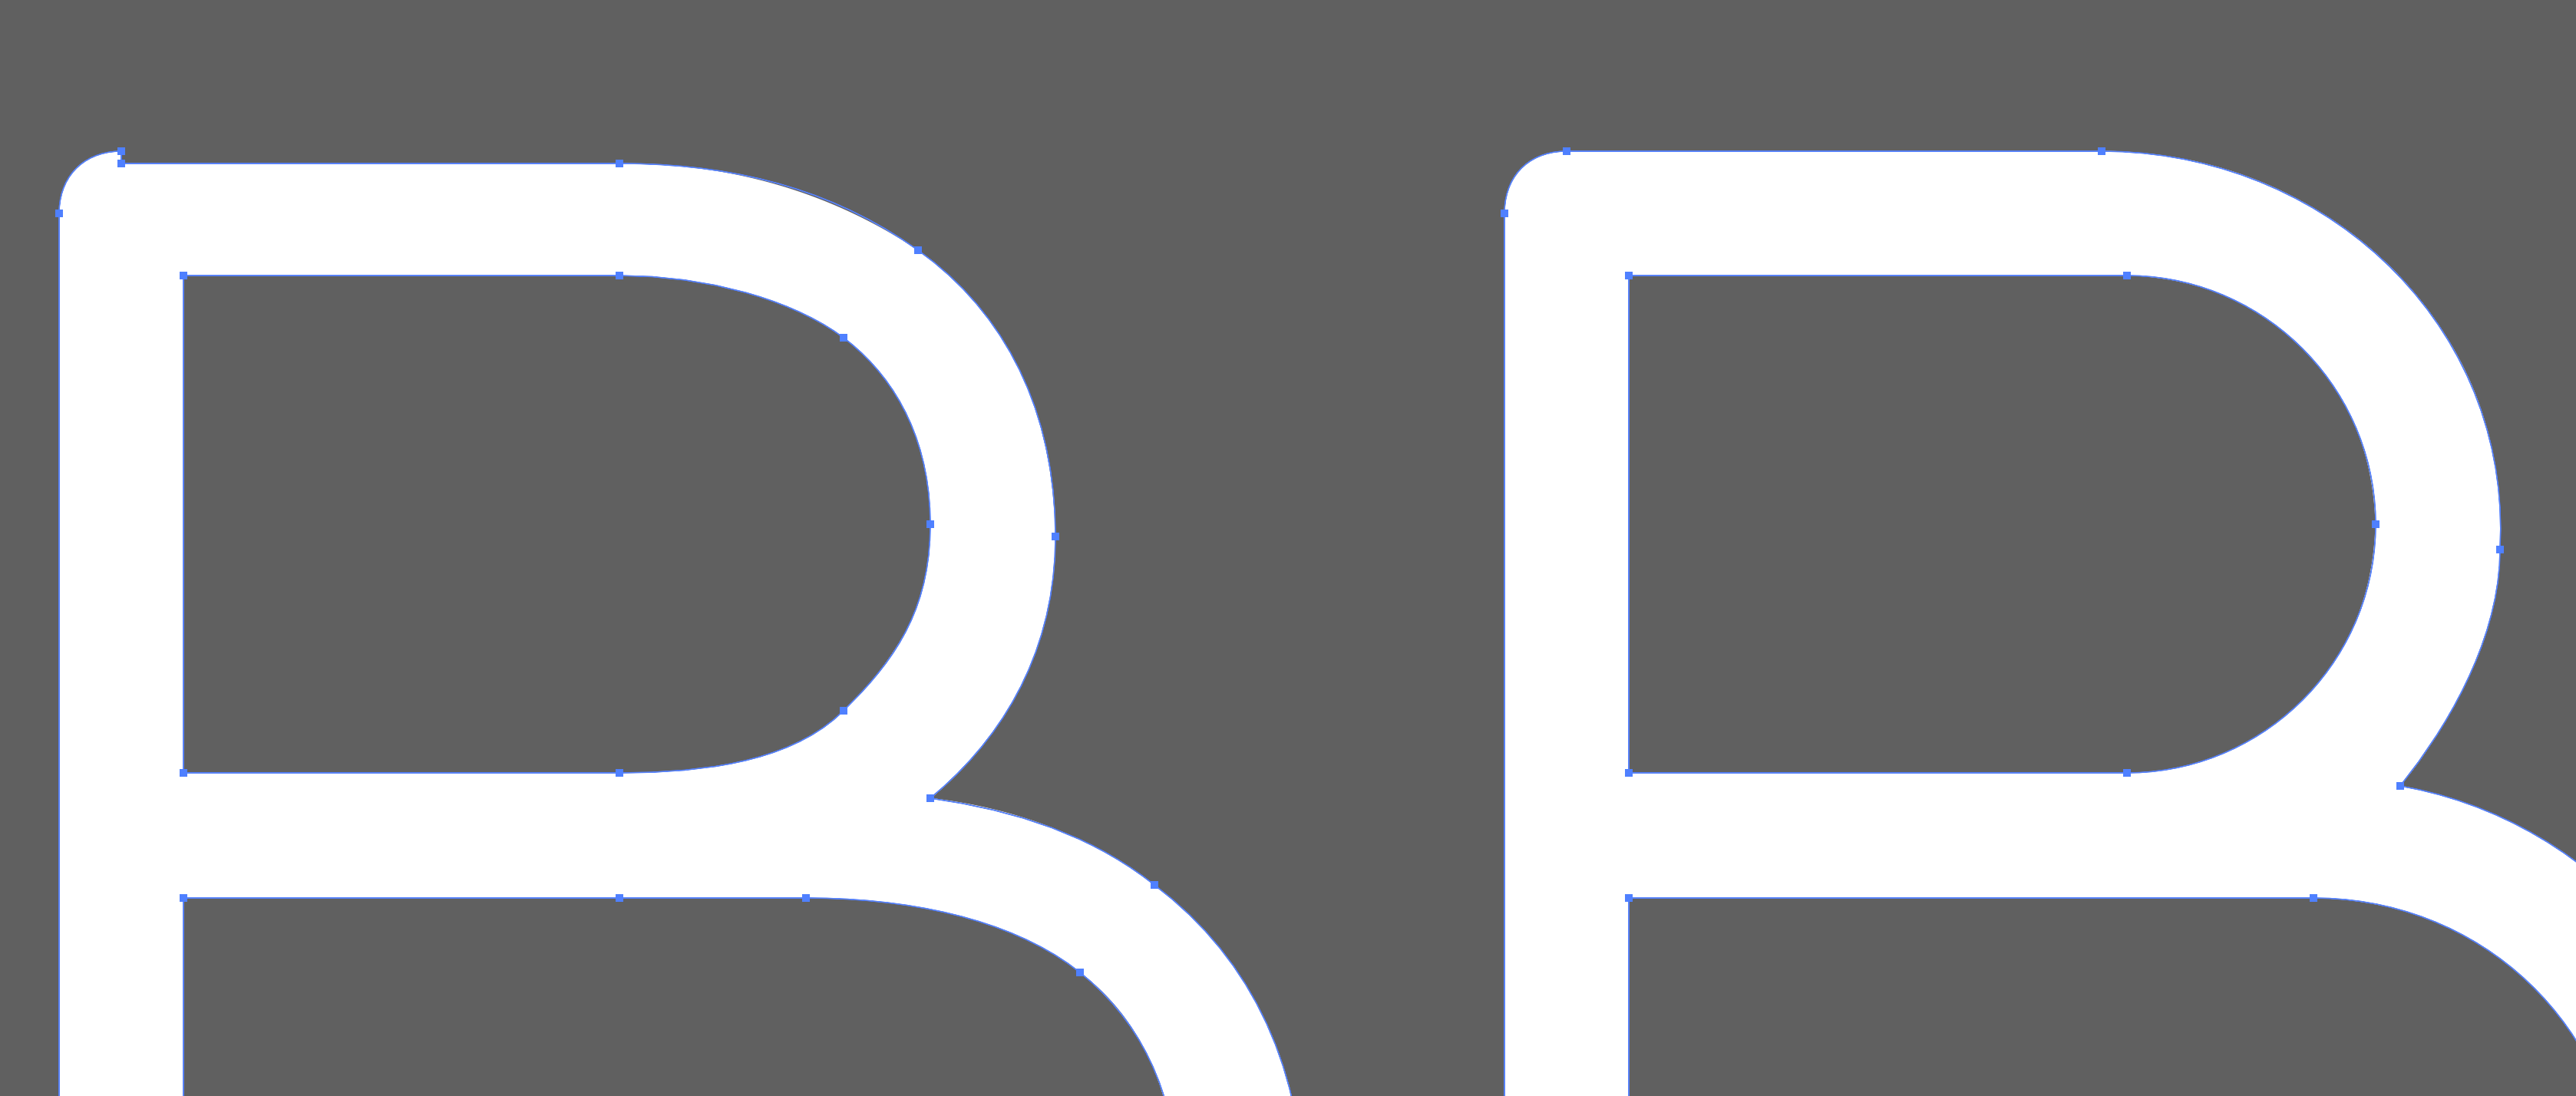 Refresh Vector SVG Icon (17) - SVG Repo